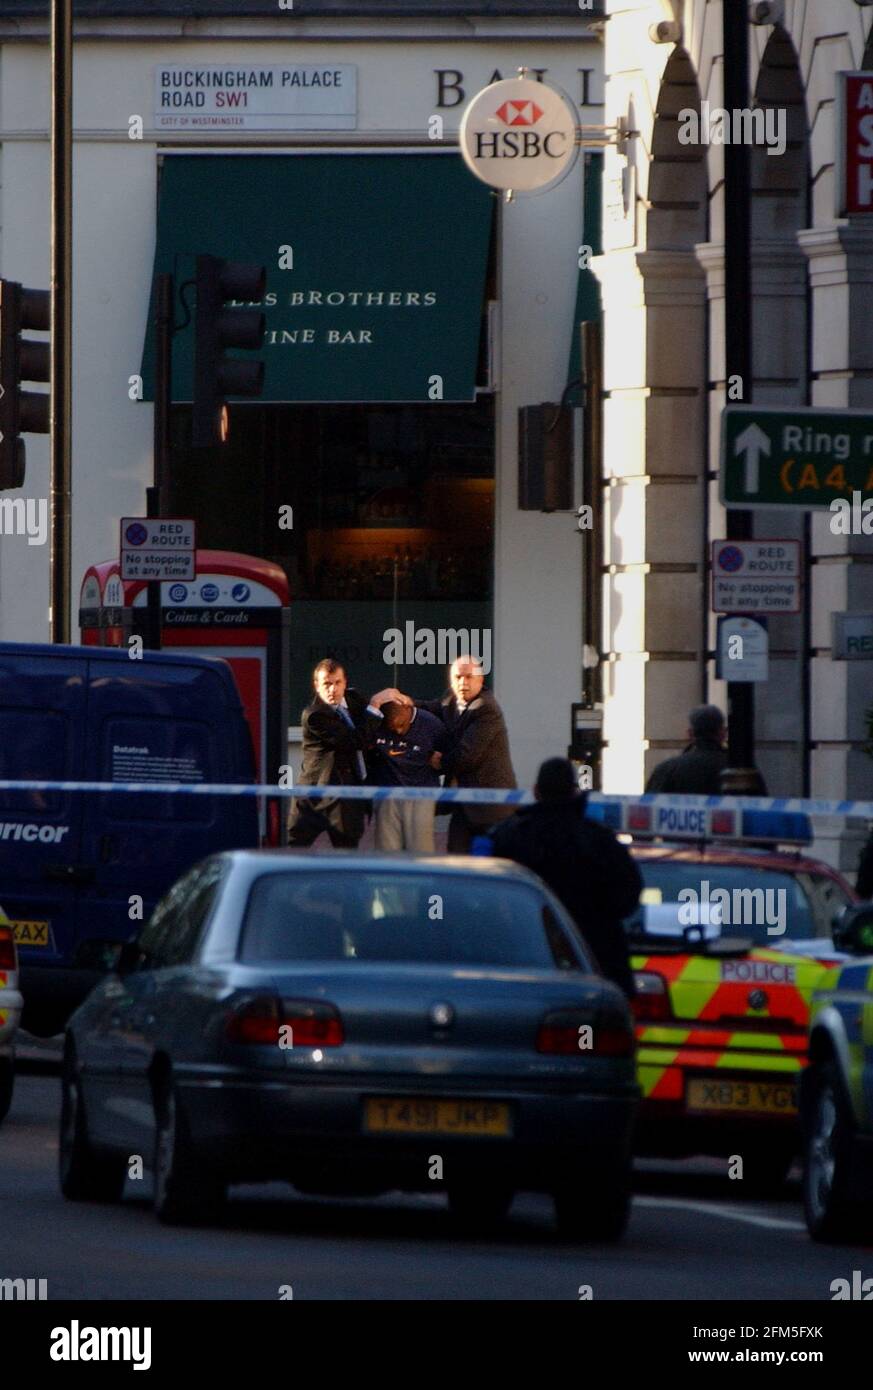 Die Polizei begleitete heute Nachmittag eine Person der HSBC Bank auf der Buckingham Palace Road, nachdem ein erfolgloser Halt vereitelt wurde. Ein anderes Mitglied wurde früher festgenommen und verhaftet. 5. Dezember 2002 Foto Andy Paradise Stockfoto